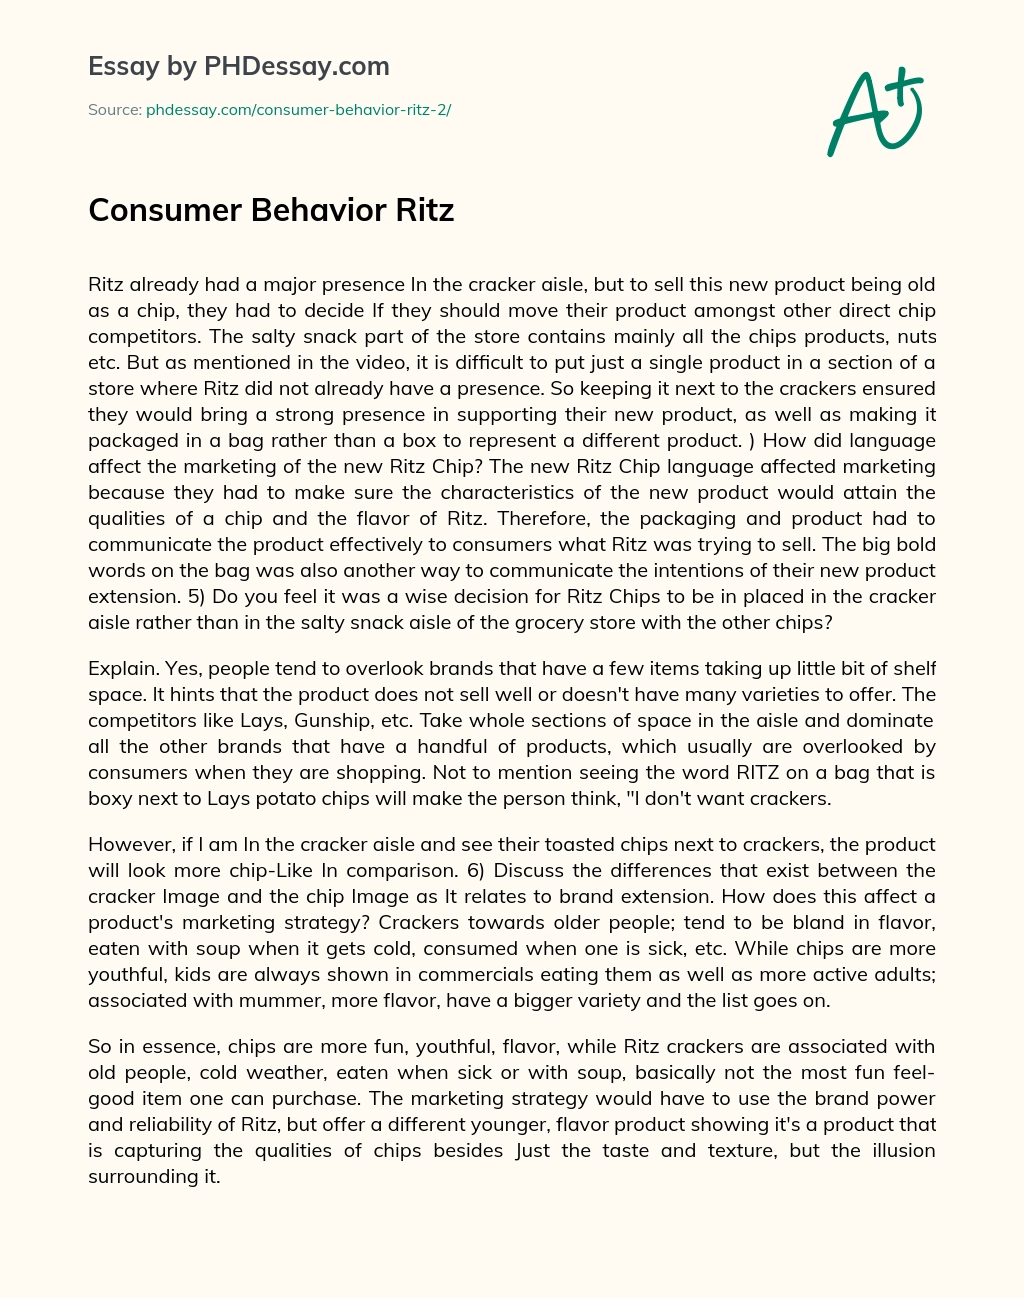 Consumer Behavior Ritz essay